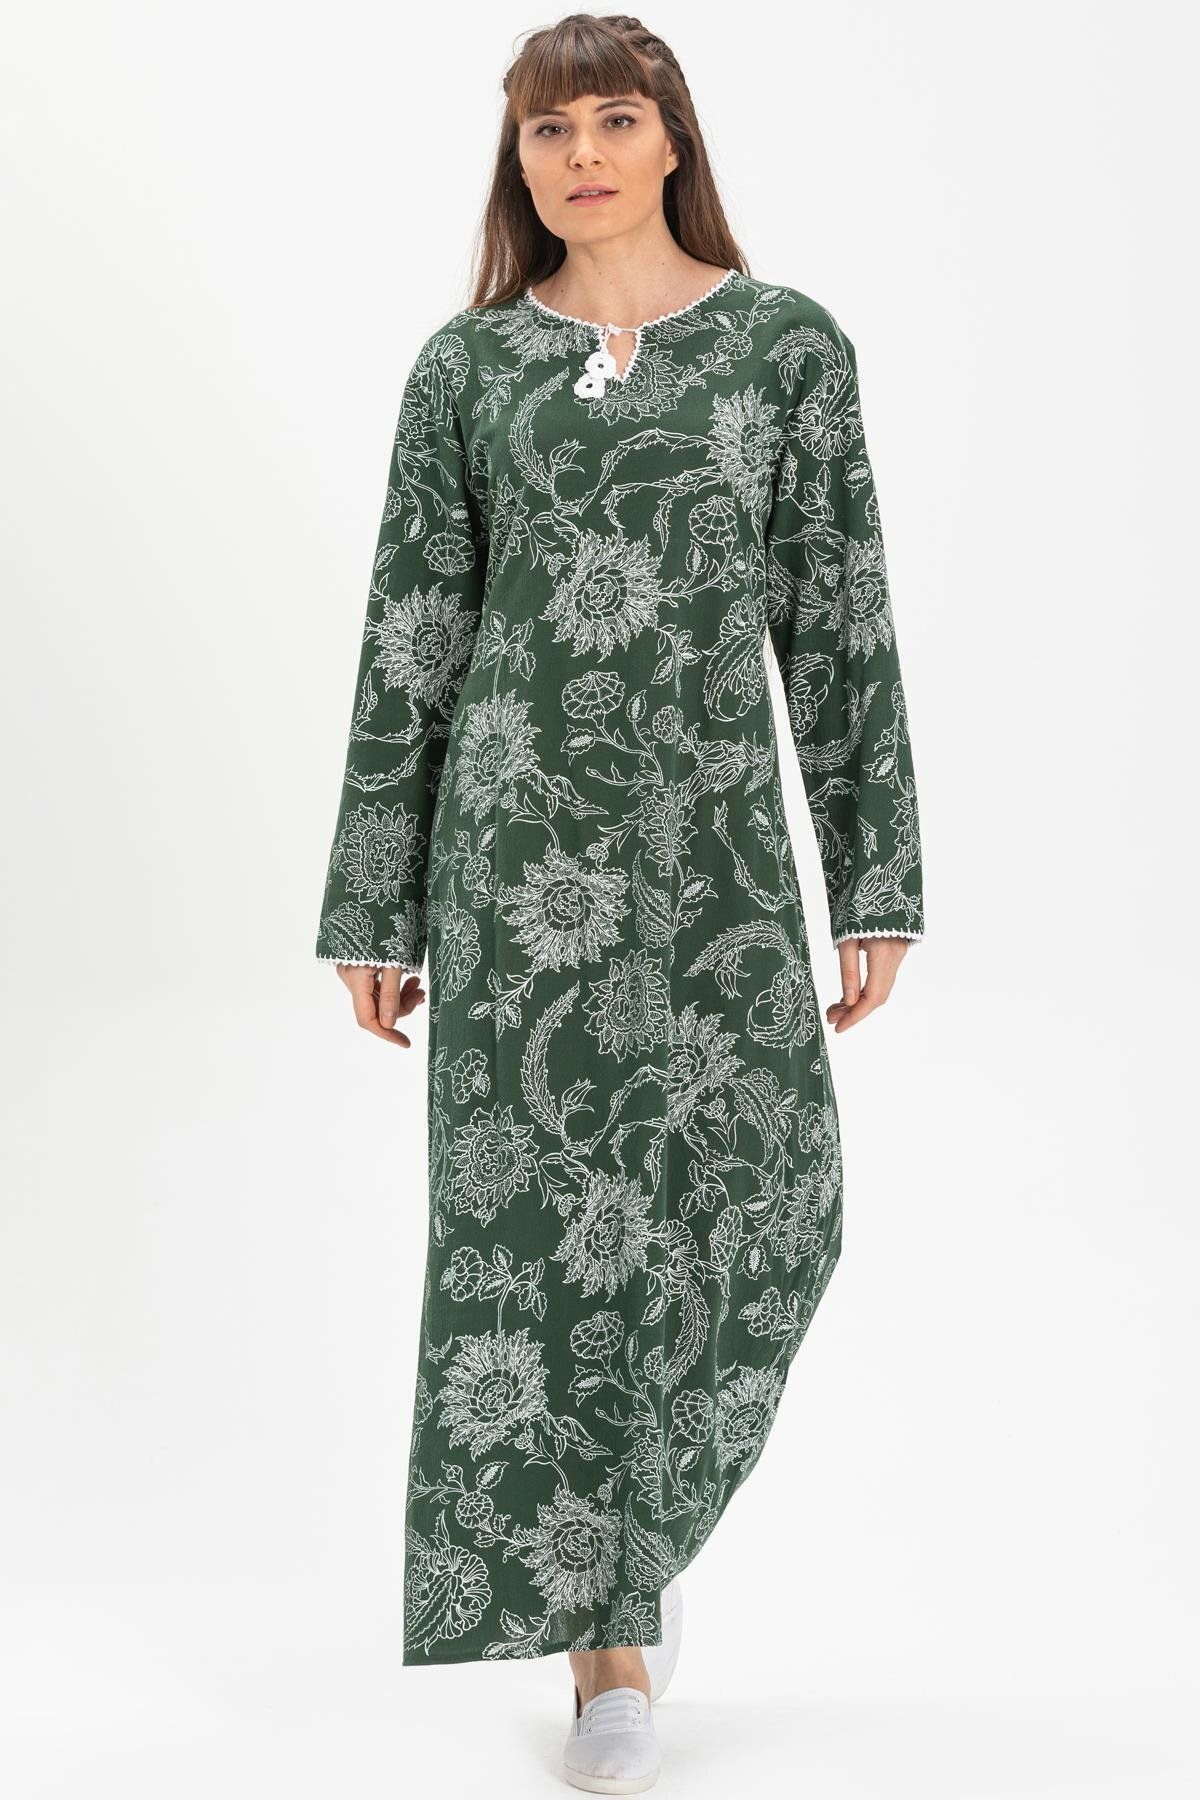 Eliş Şile Bezi Uzun Kol Büyük Beden Şile Bezi Baskılı Uzun Yazlık Elbise Çınar Desen Yeşil Ysl